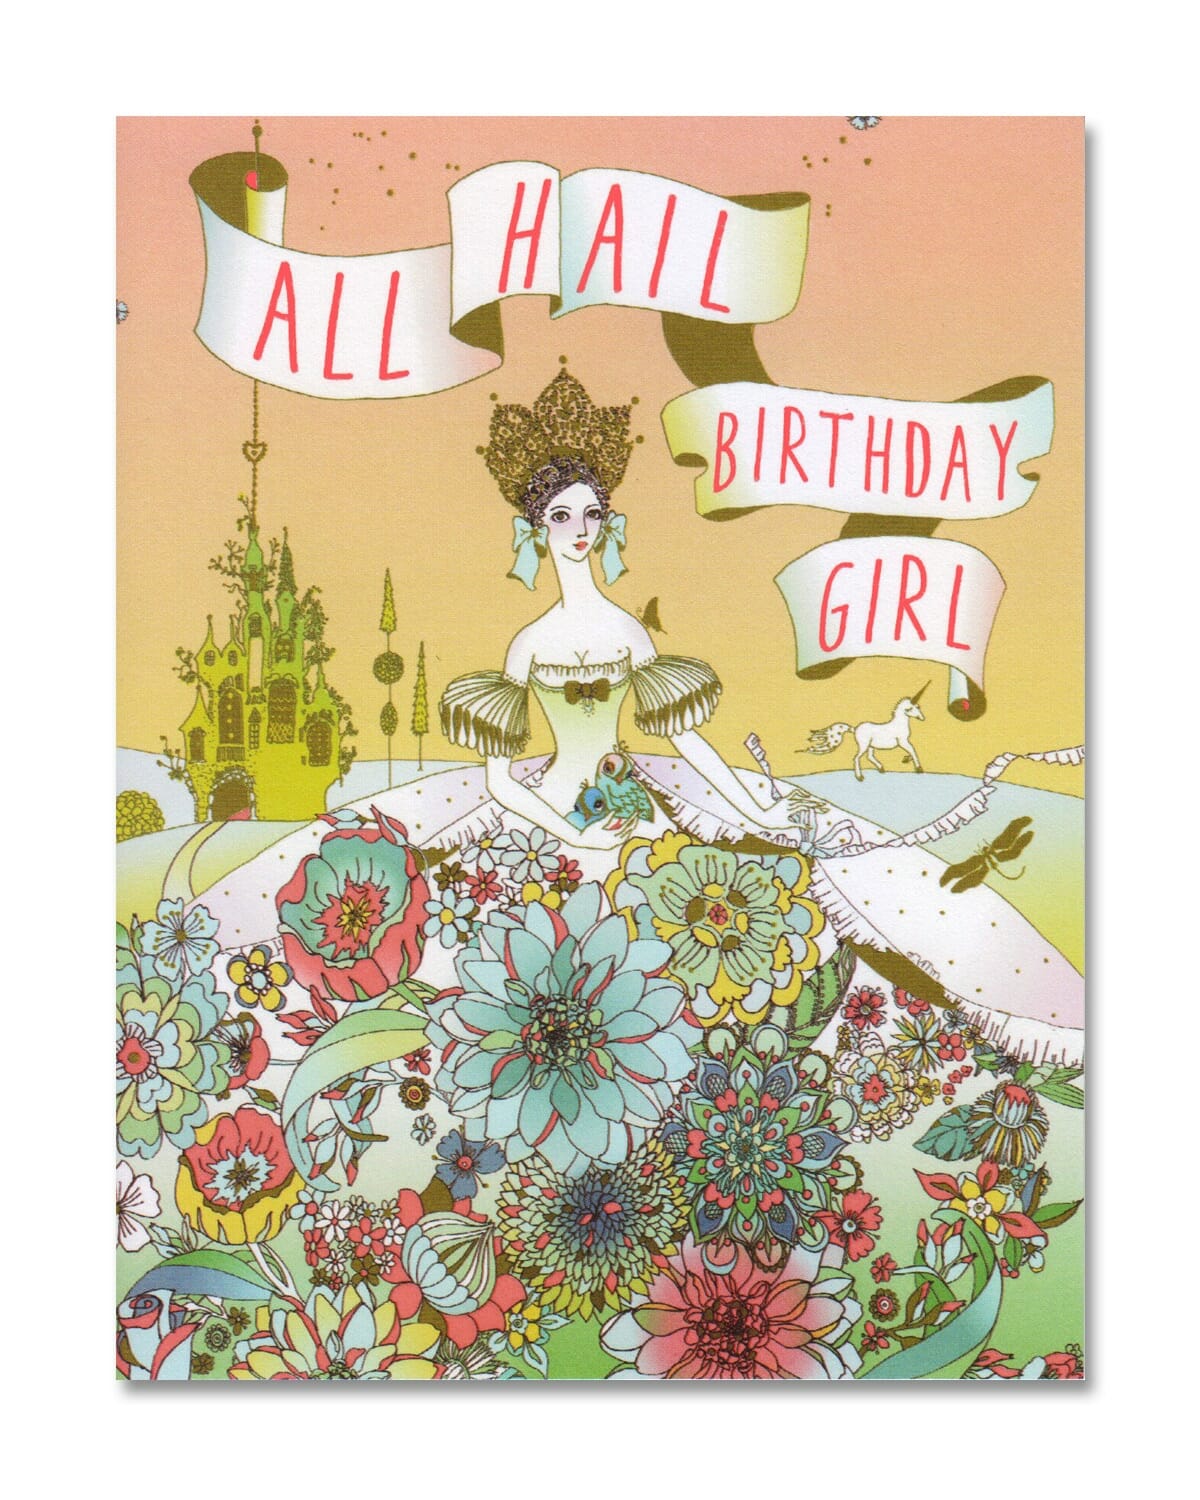 All Hail the Birthday Girl